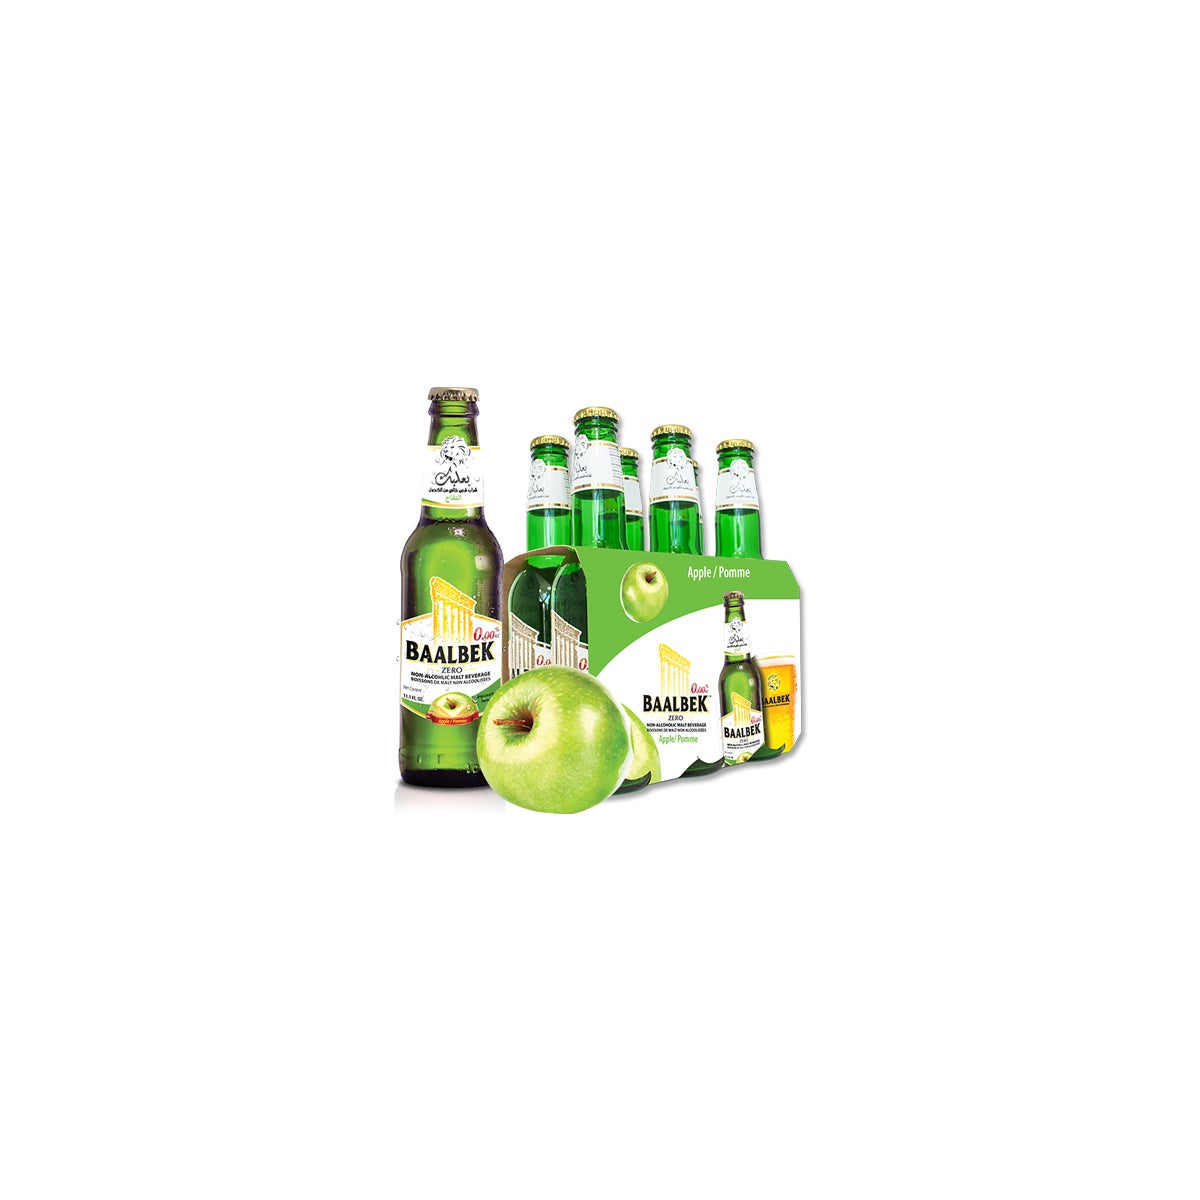 Baalbek Apple malt drink 330ml * 24